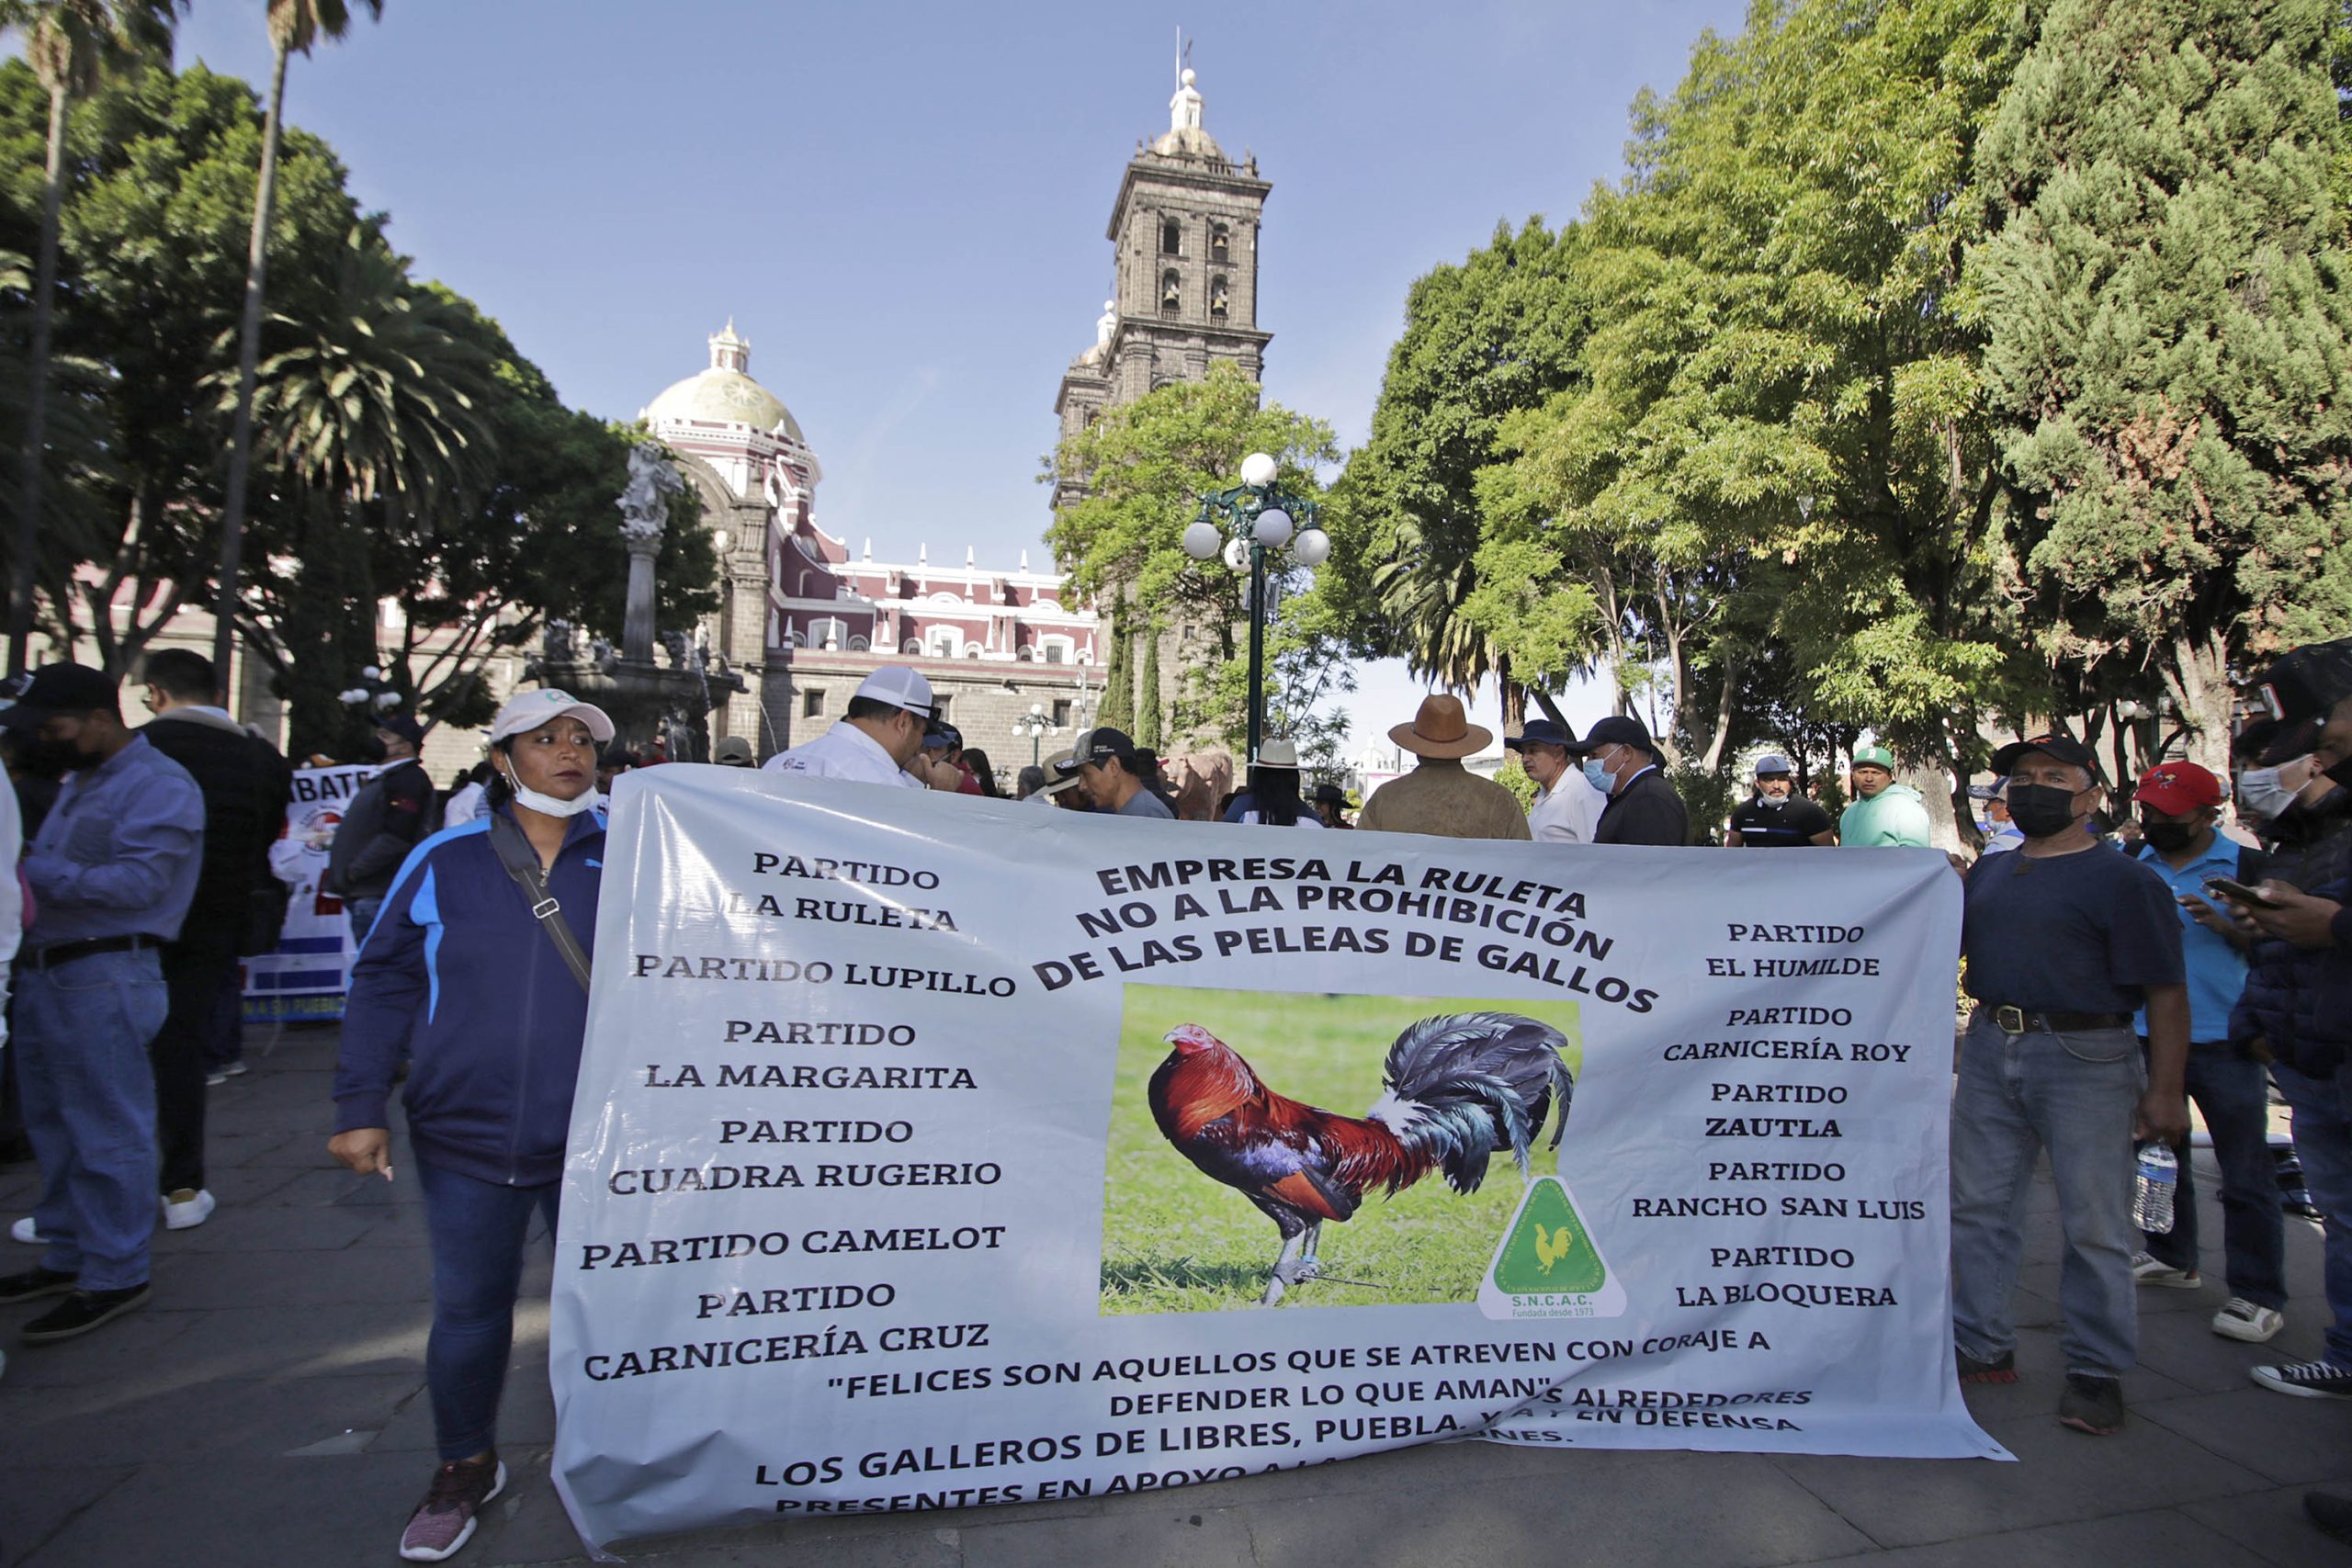 Galleros protestan contra iniciativa que castiga peleas de gallos y tauromaquia